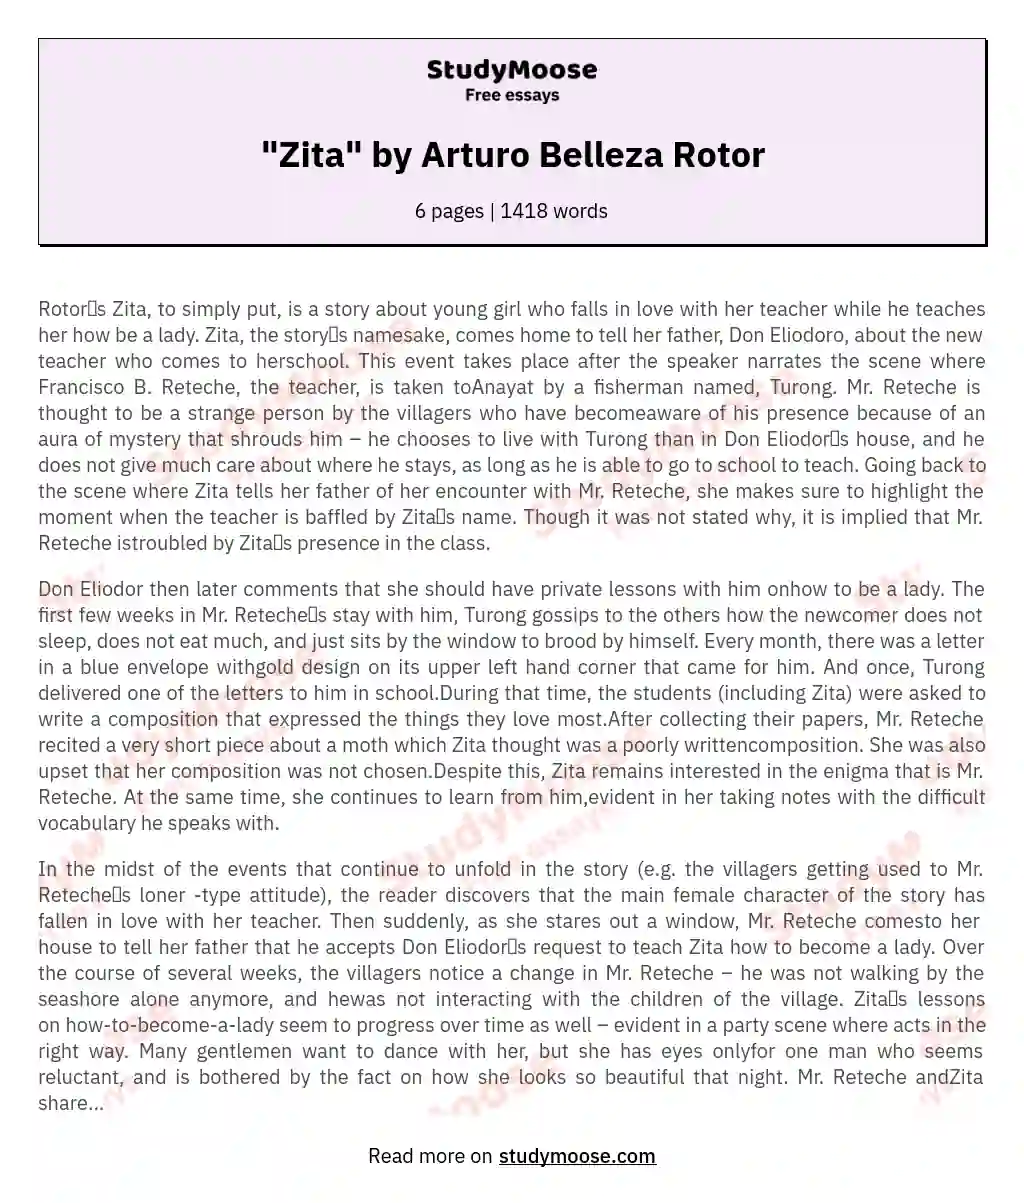 "Zita" by Arturo Belleza Rotor essay